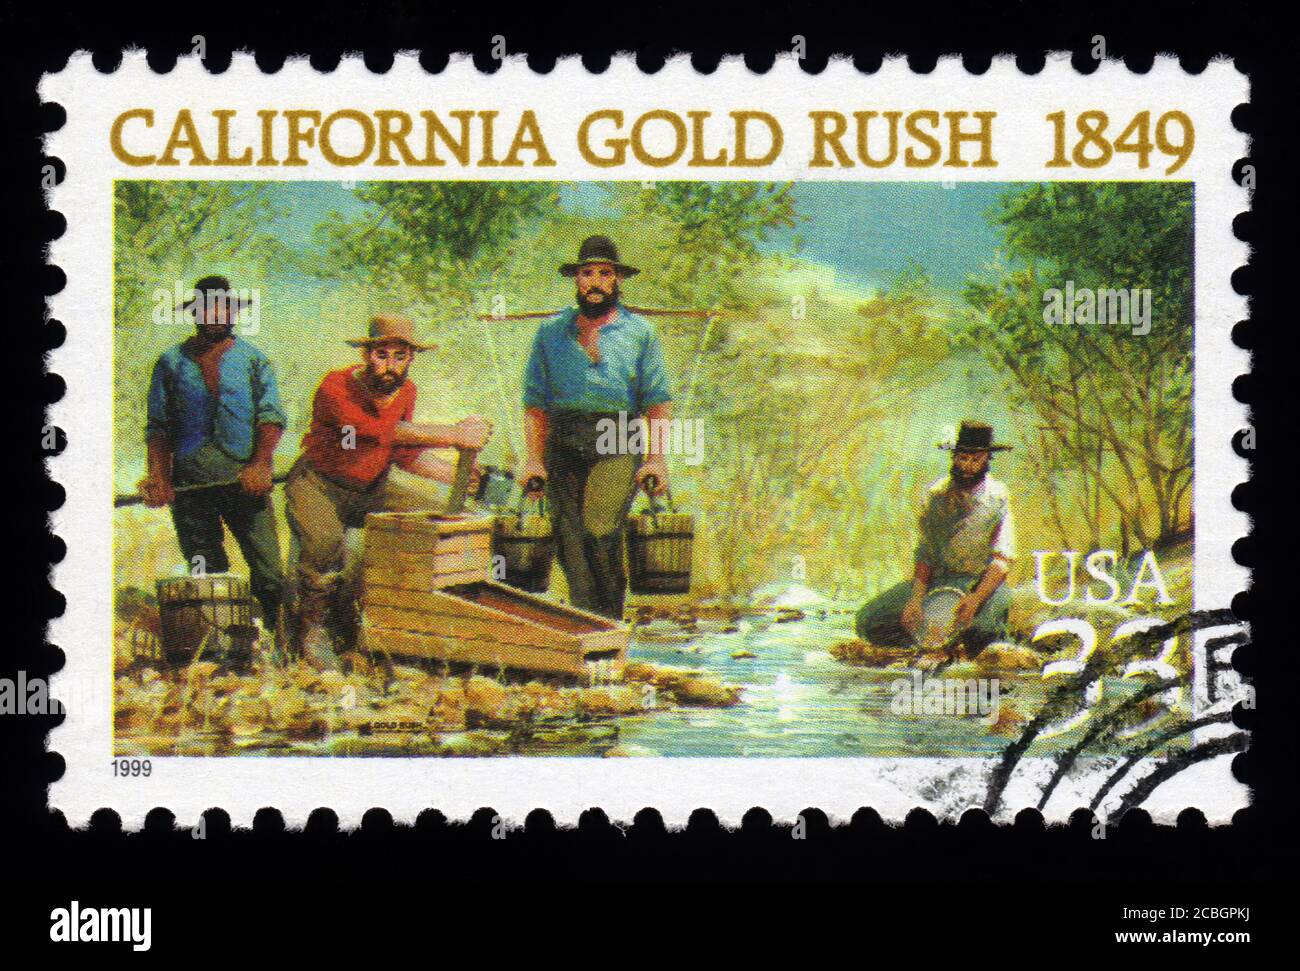 London, UK, 5. Februar 2011 - Jahrgang 1999 USA abgesagt Briefmarke zeigt ein Bild von California Gold Rush Bergleute schwenken für Goldstempel sammeln Stockfoto